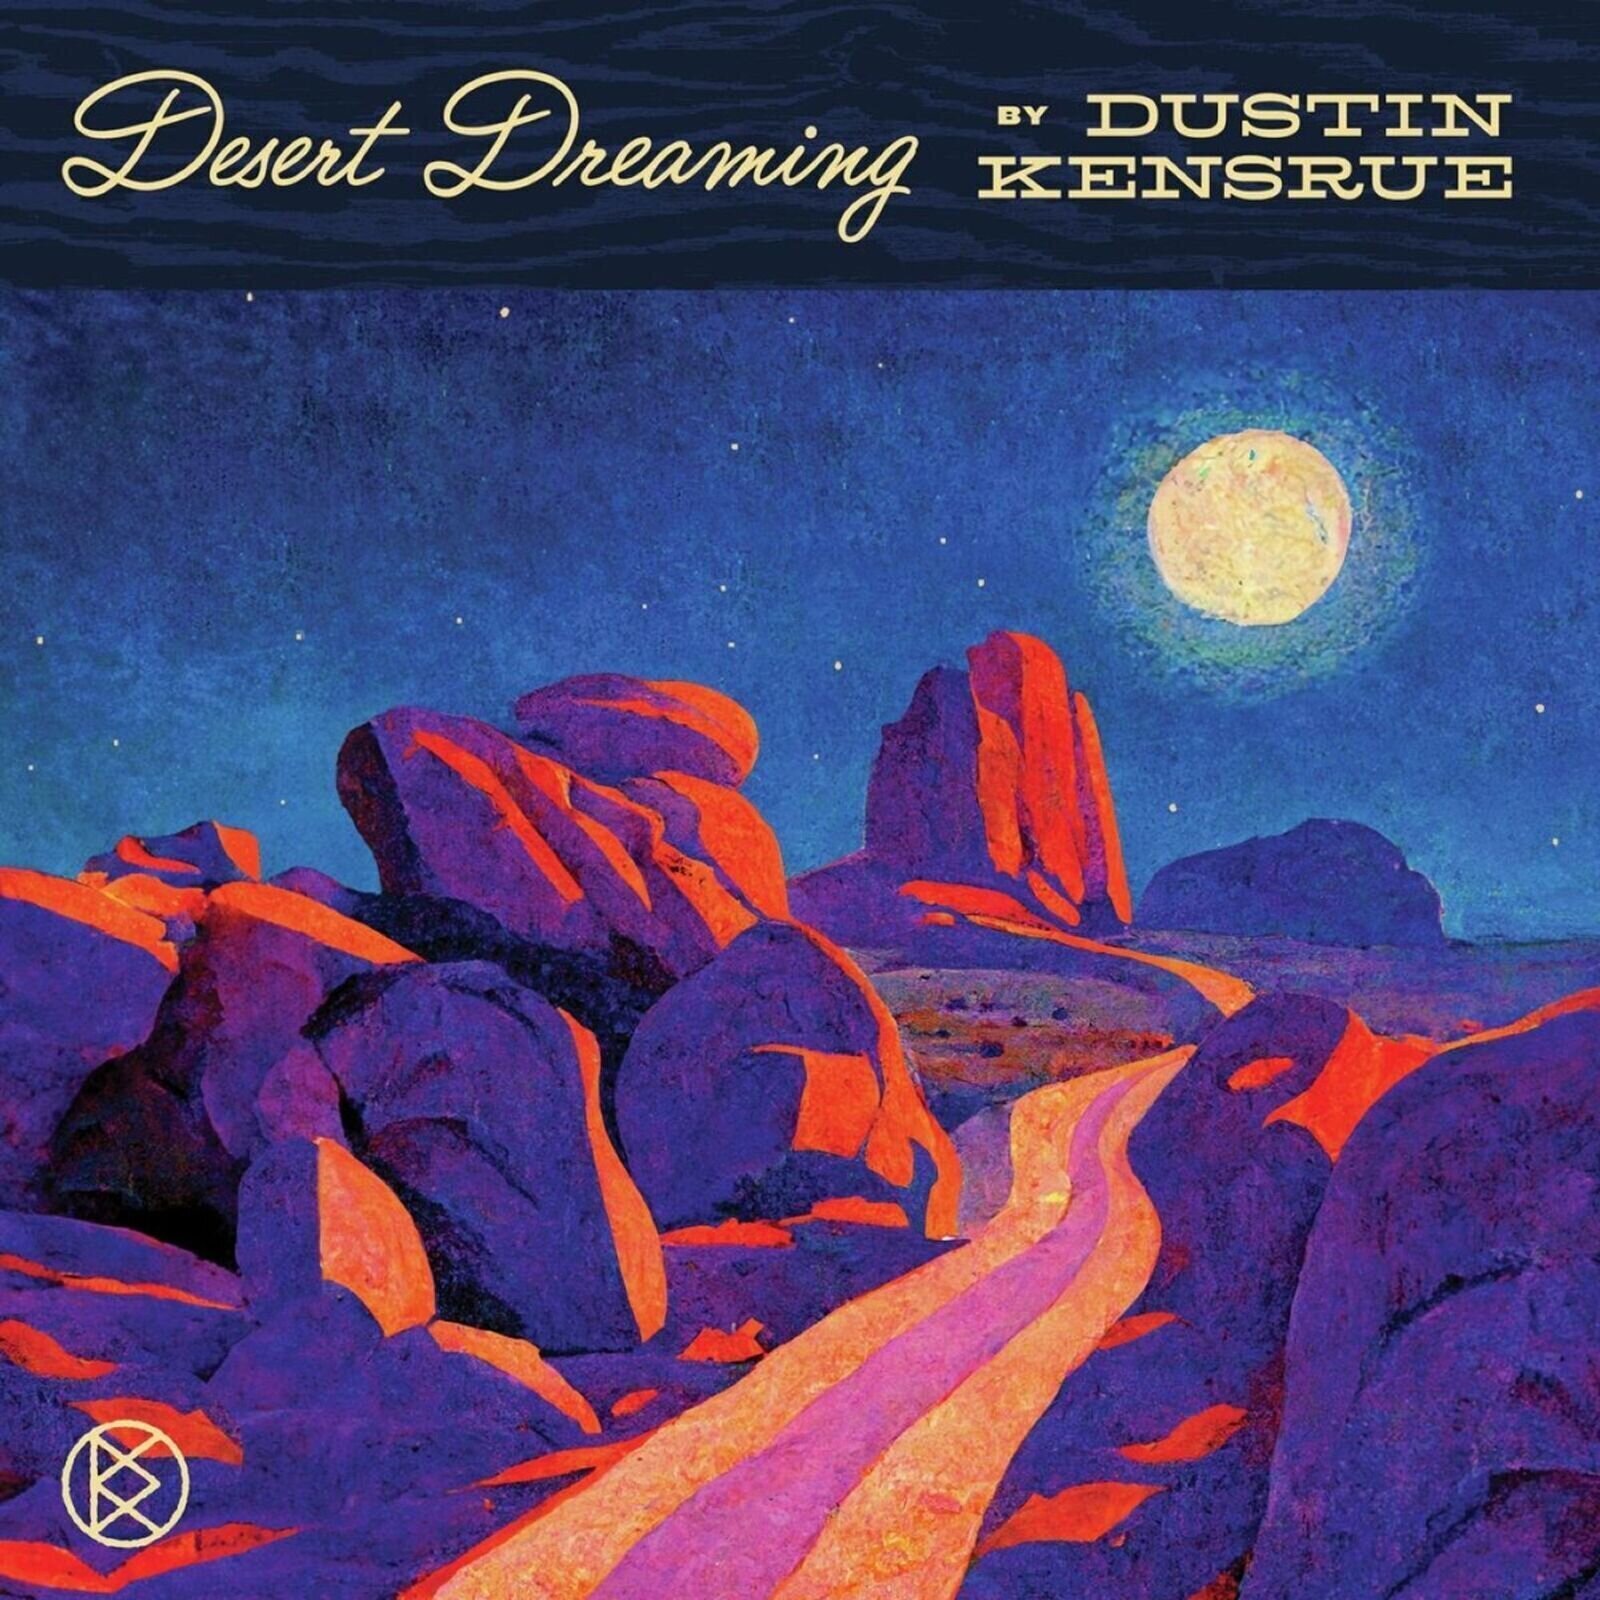 Glazbene CD Dustin Kensrue - Desert Dreaming (CD)